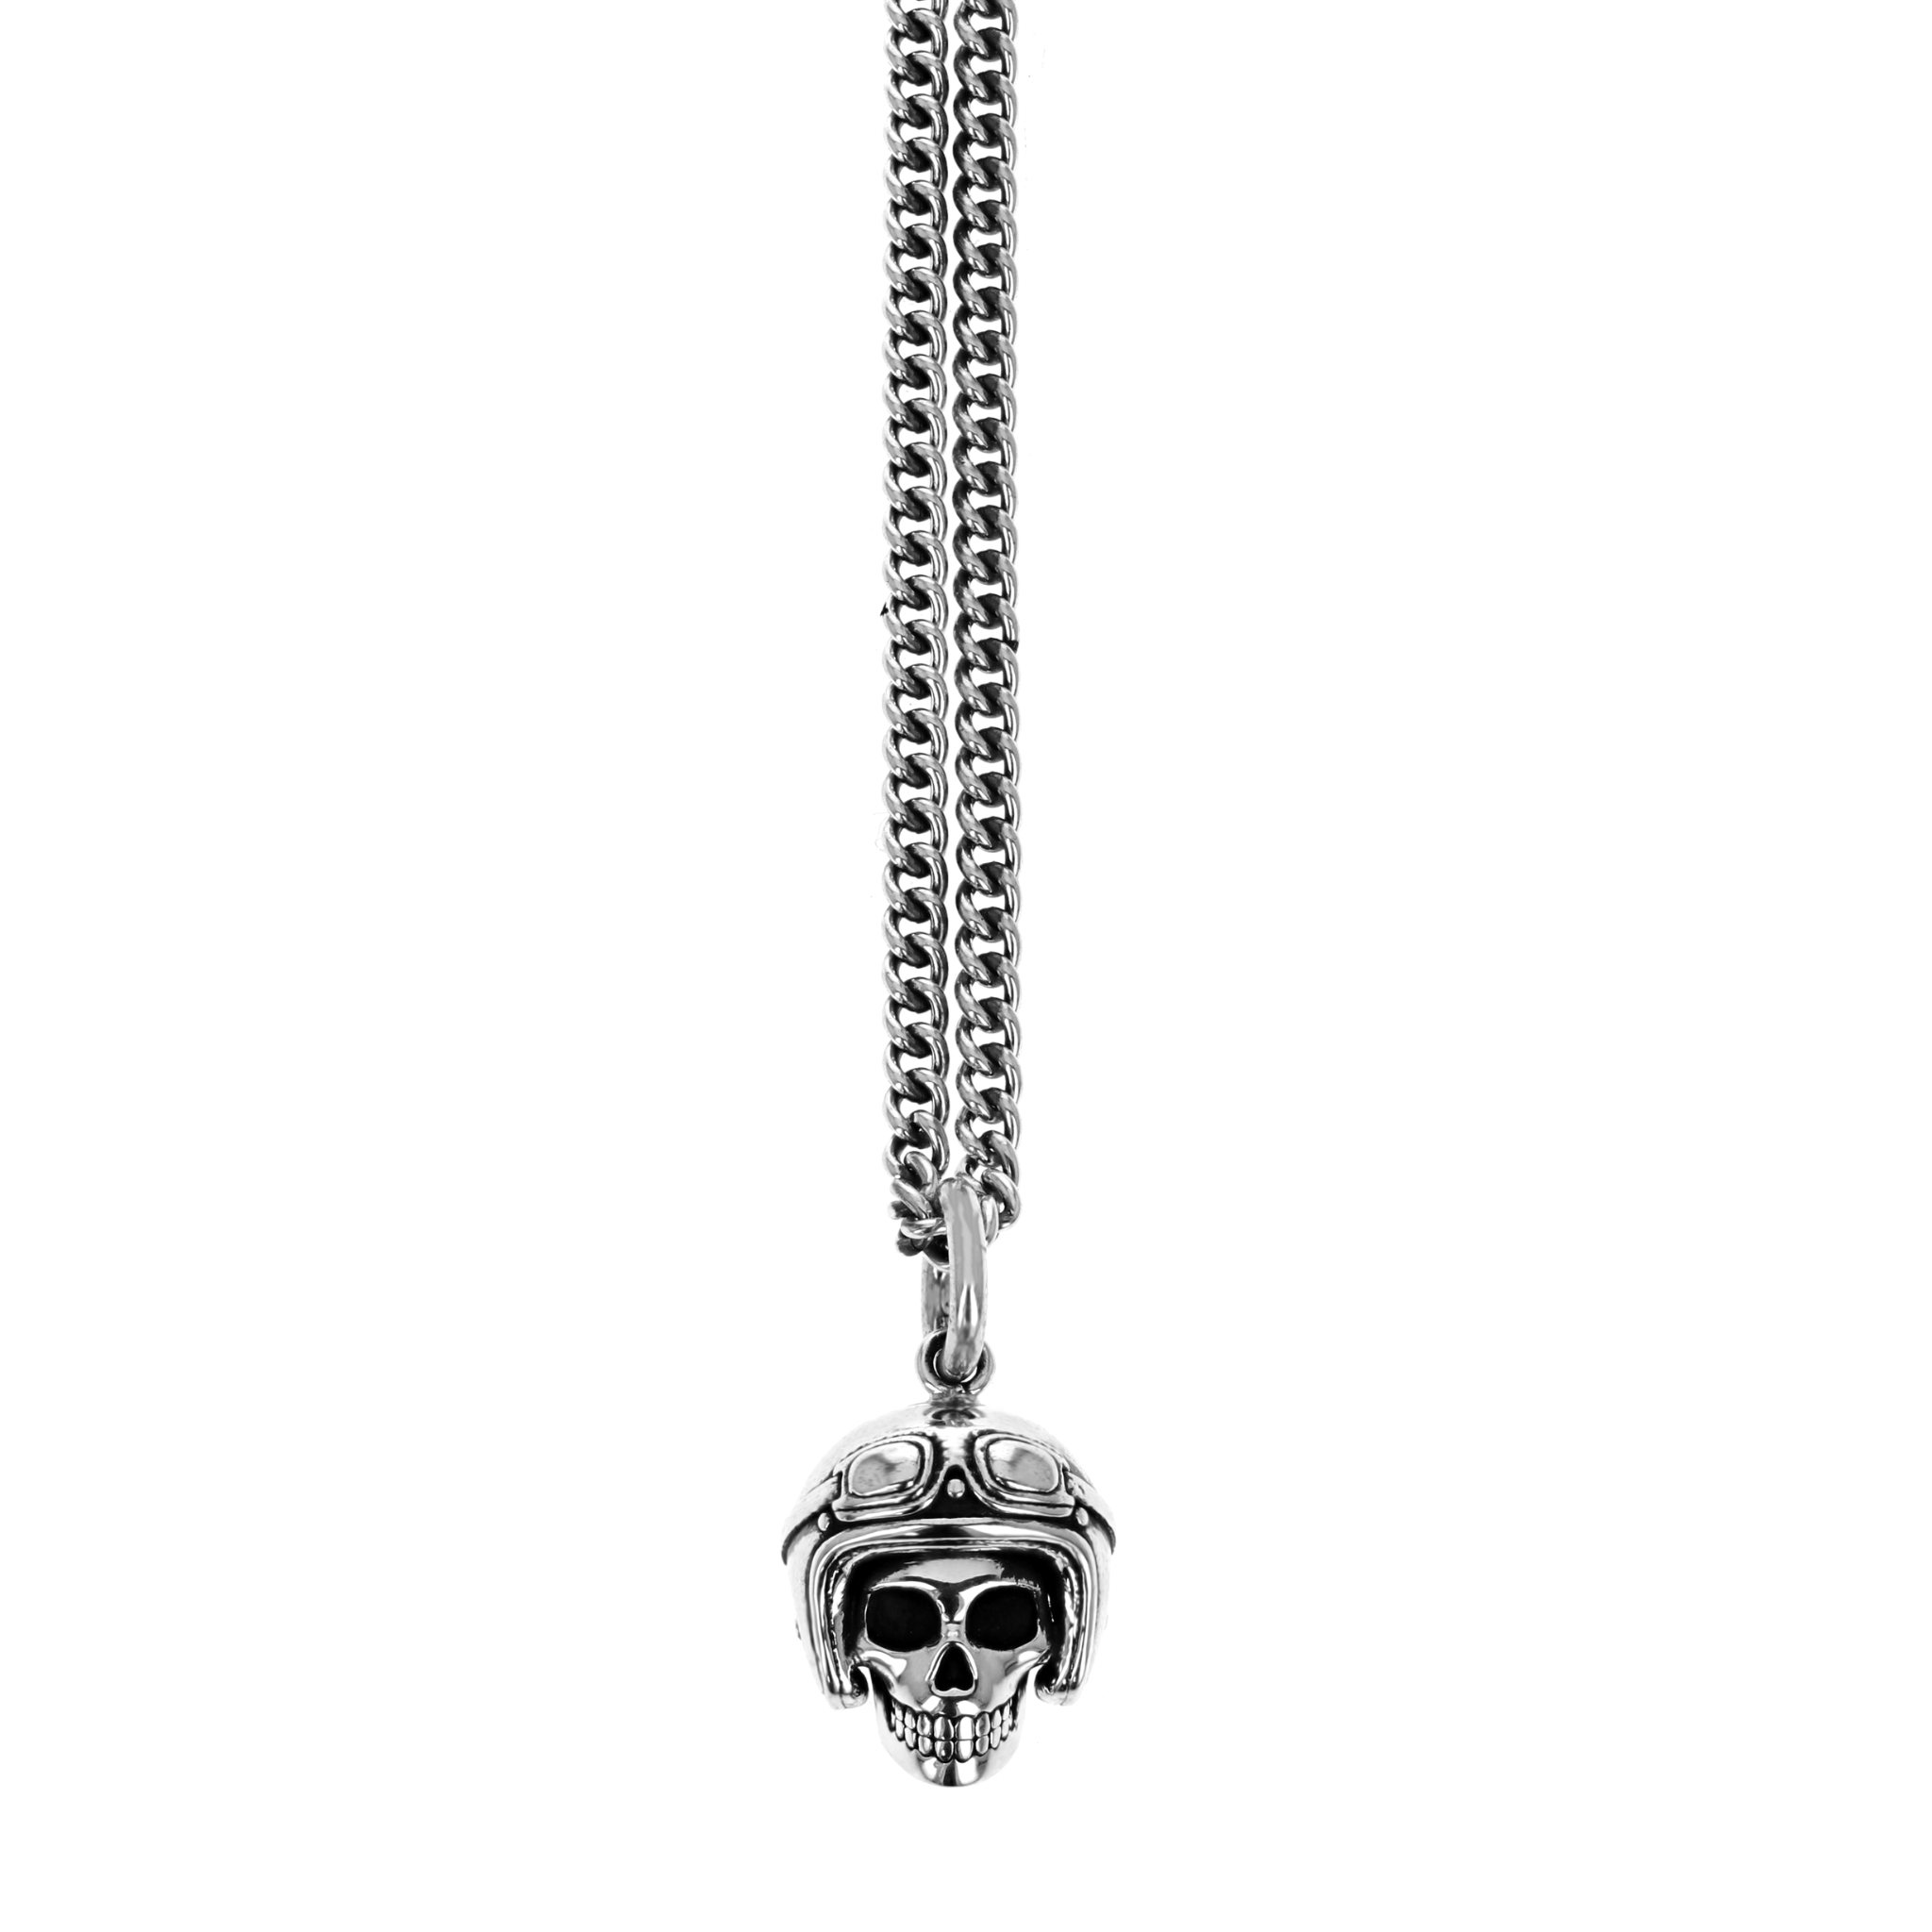 Product shot of skull pendant with biker helmet on